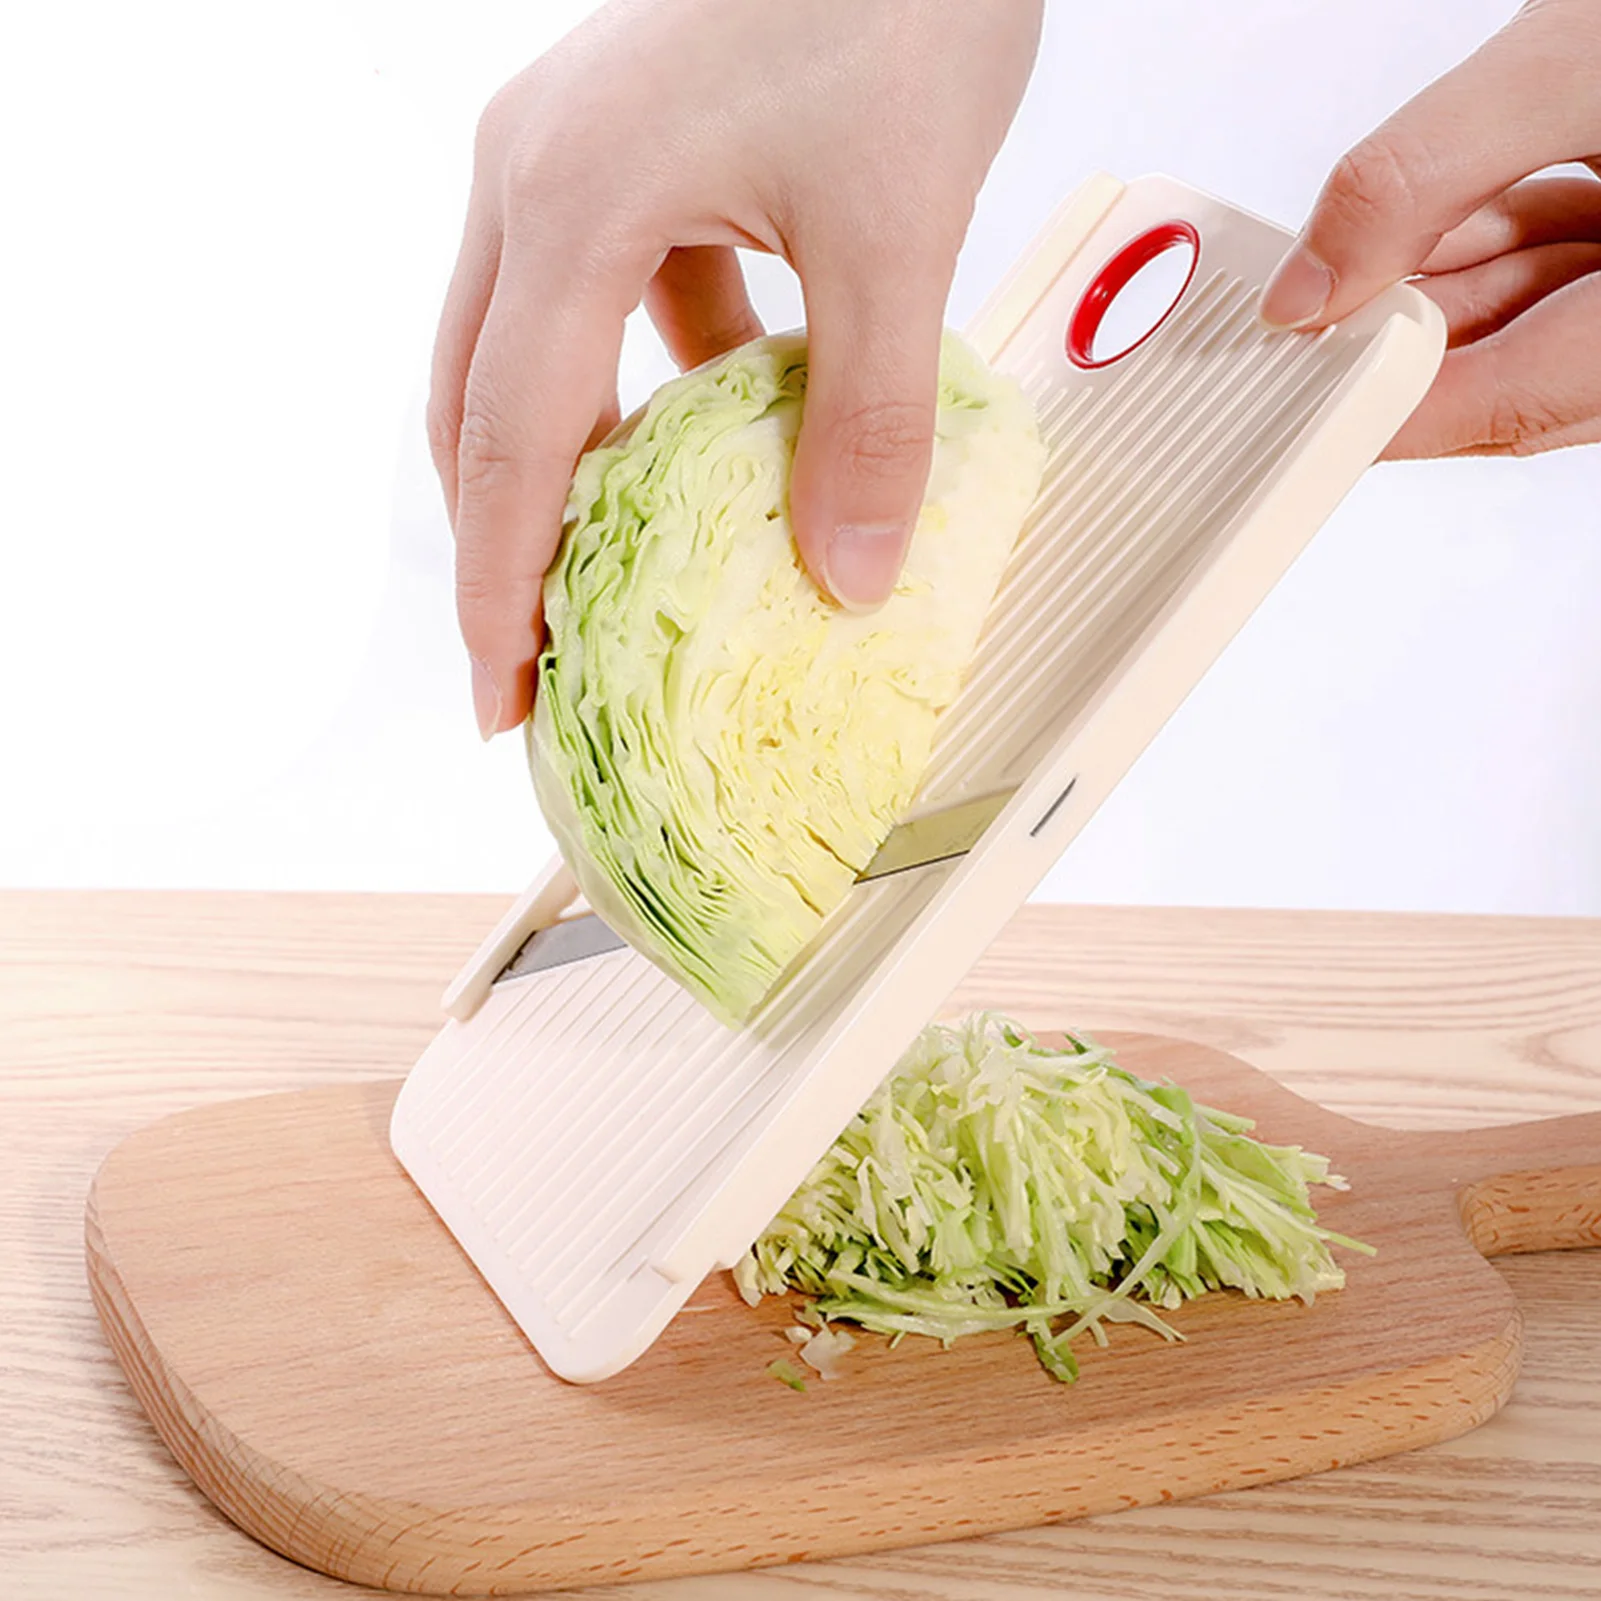 1PCMulti-Functional Manual Vegetable Slicer: Safe Mandoline Slicer